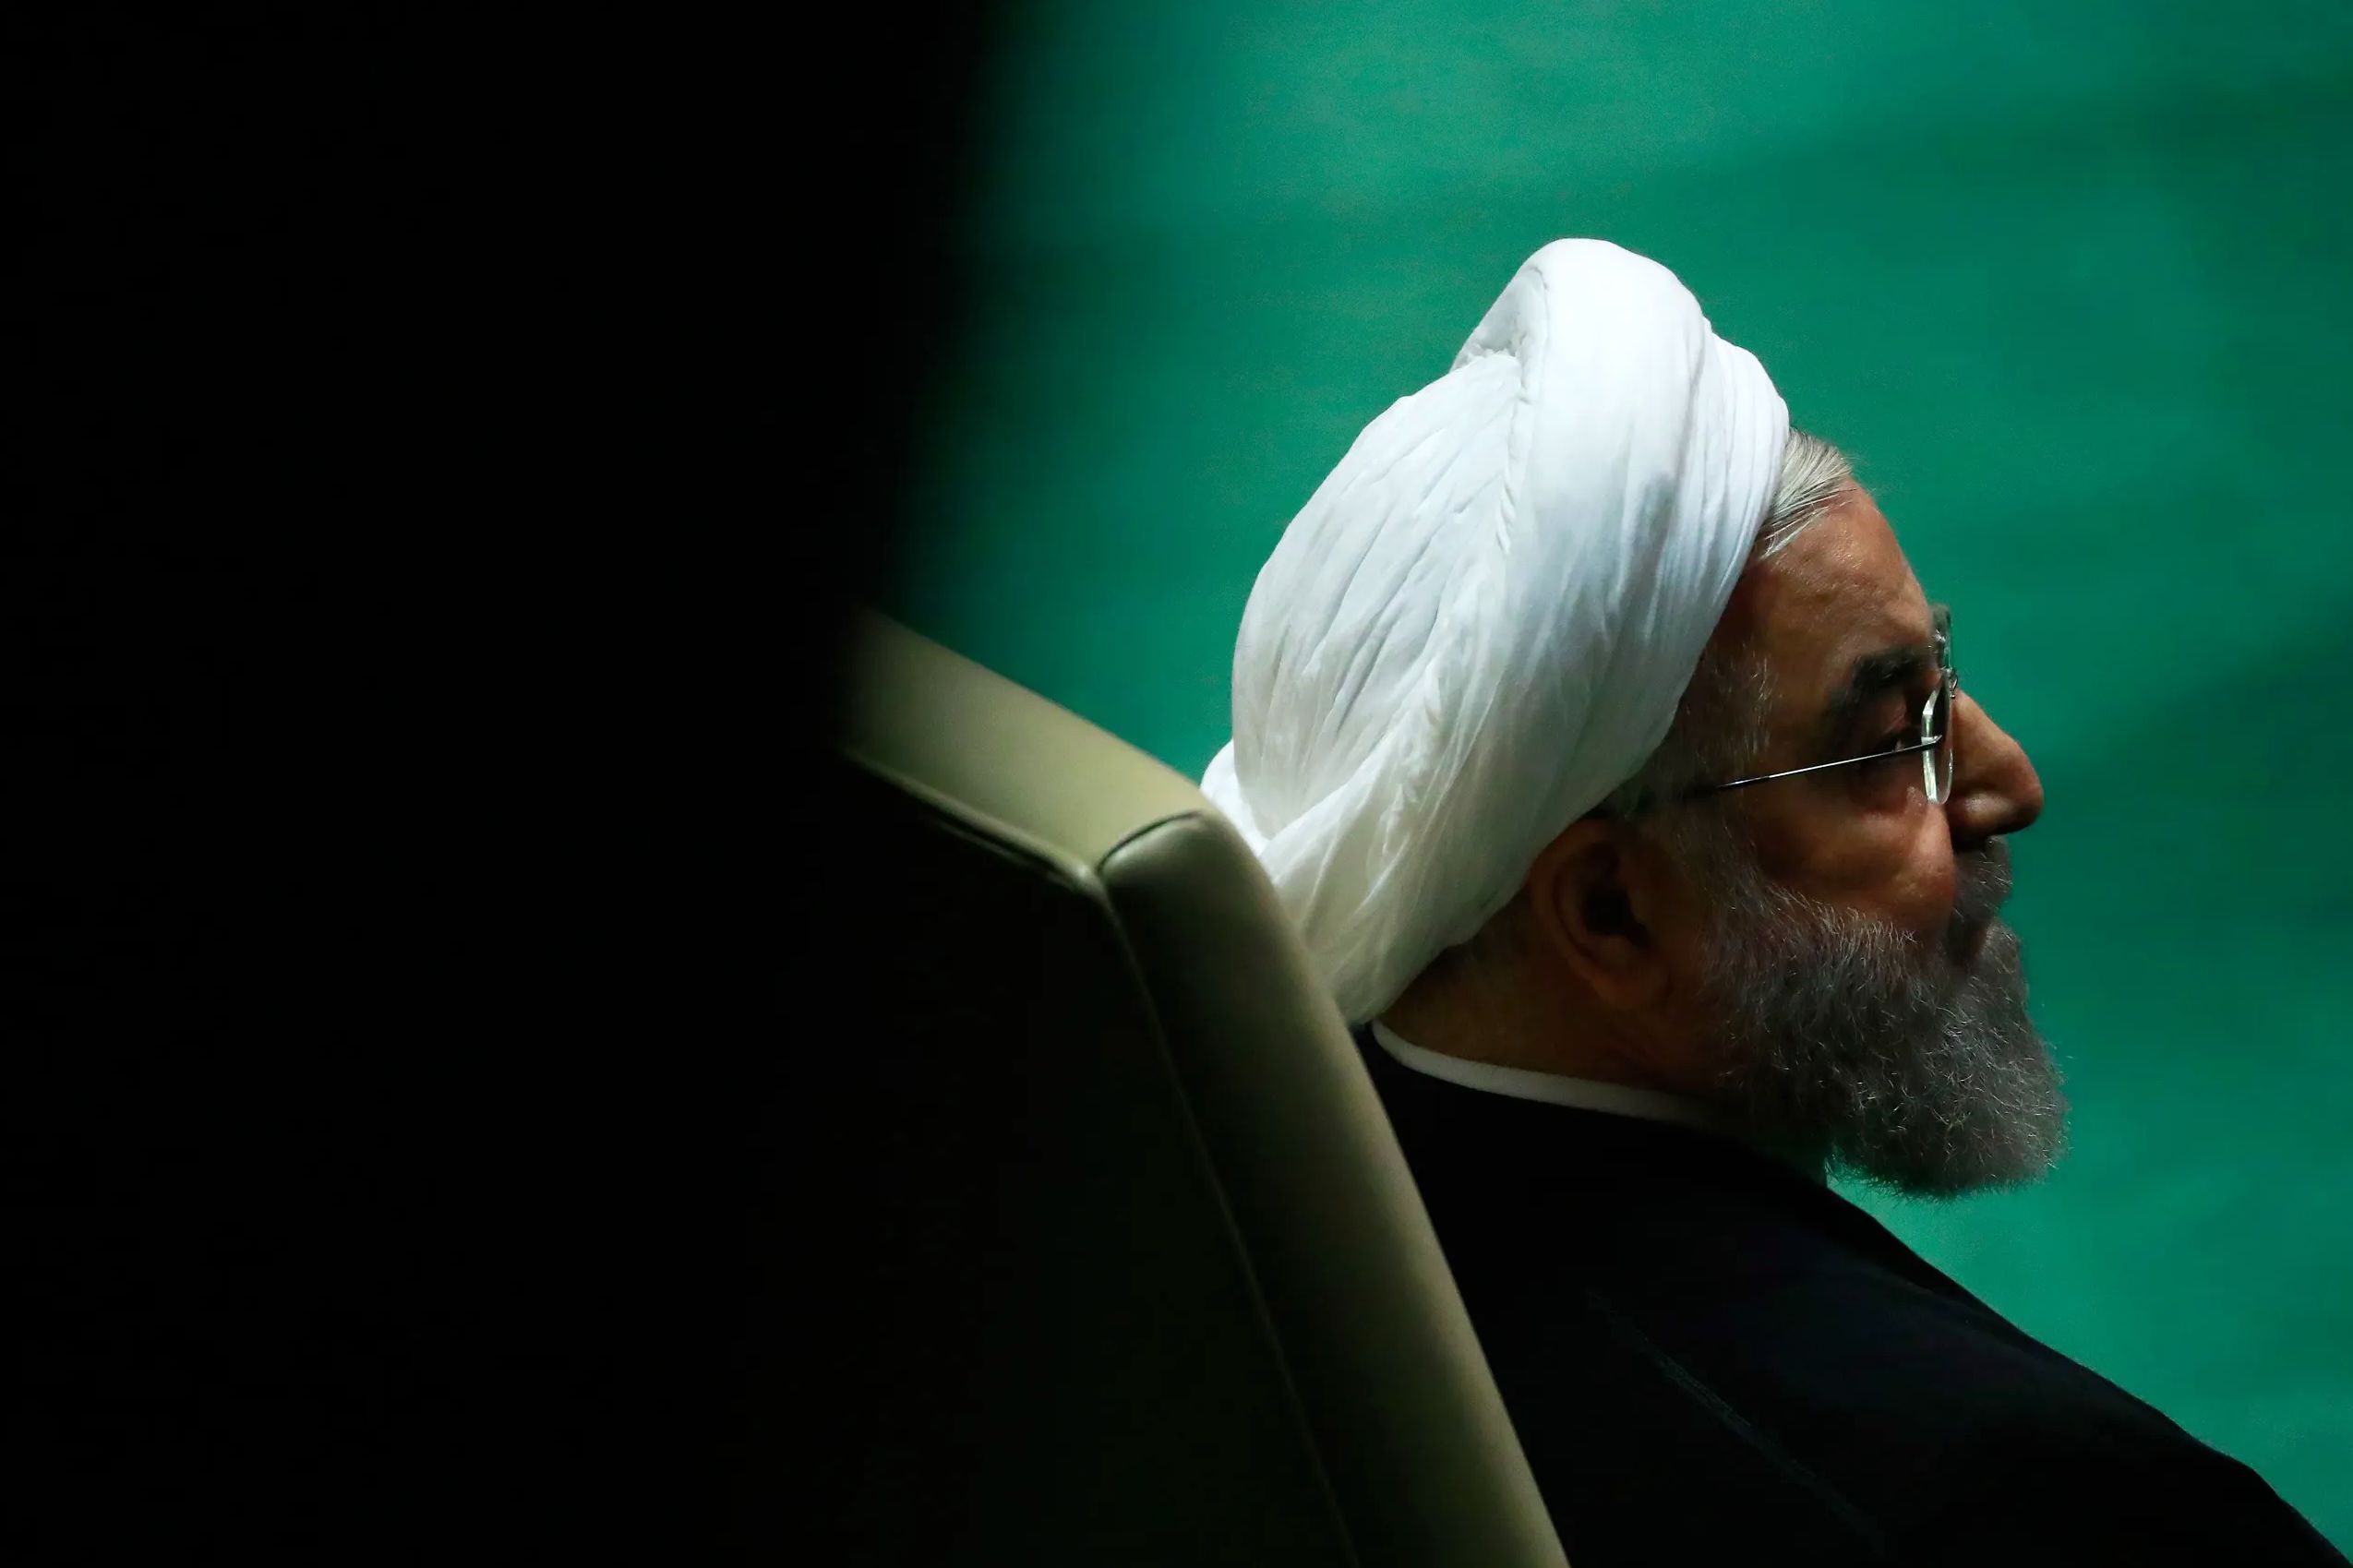 نامه جدید حسن روحانی به کمیسیون تبلیغات انتخابات ریاست جمهوری / اعلام آمادگی برای پاسخ به ادعاها